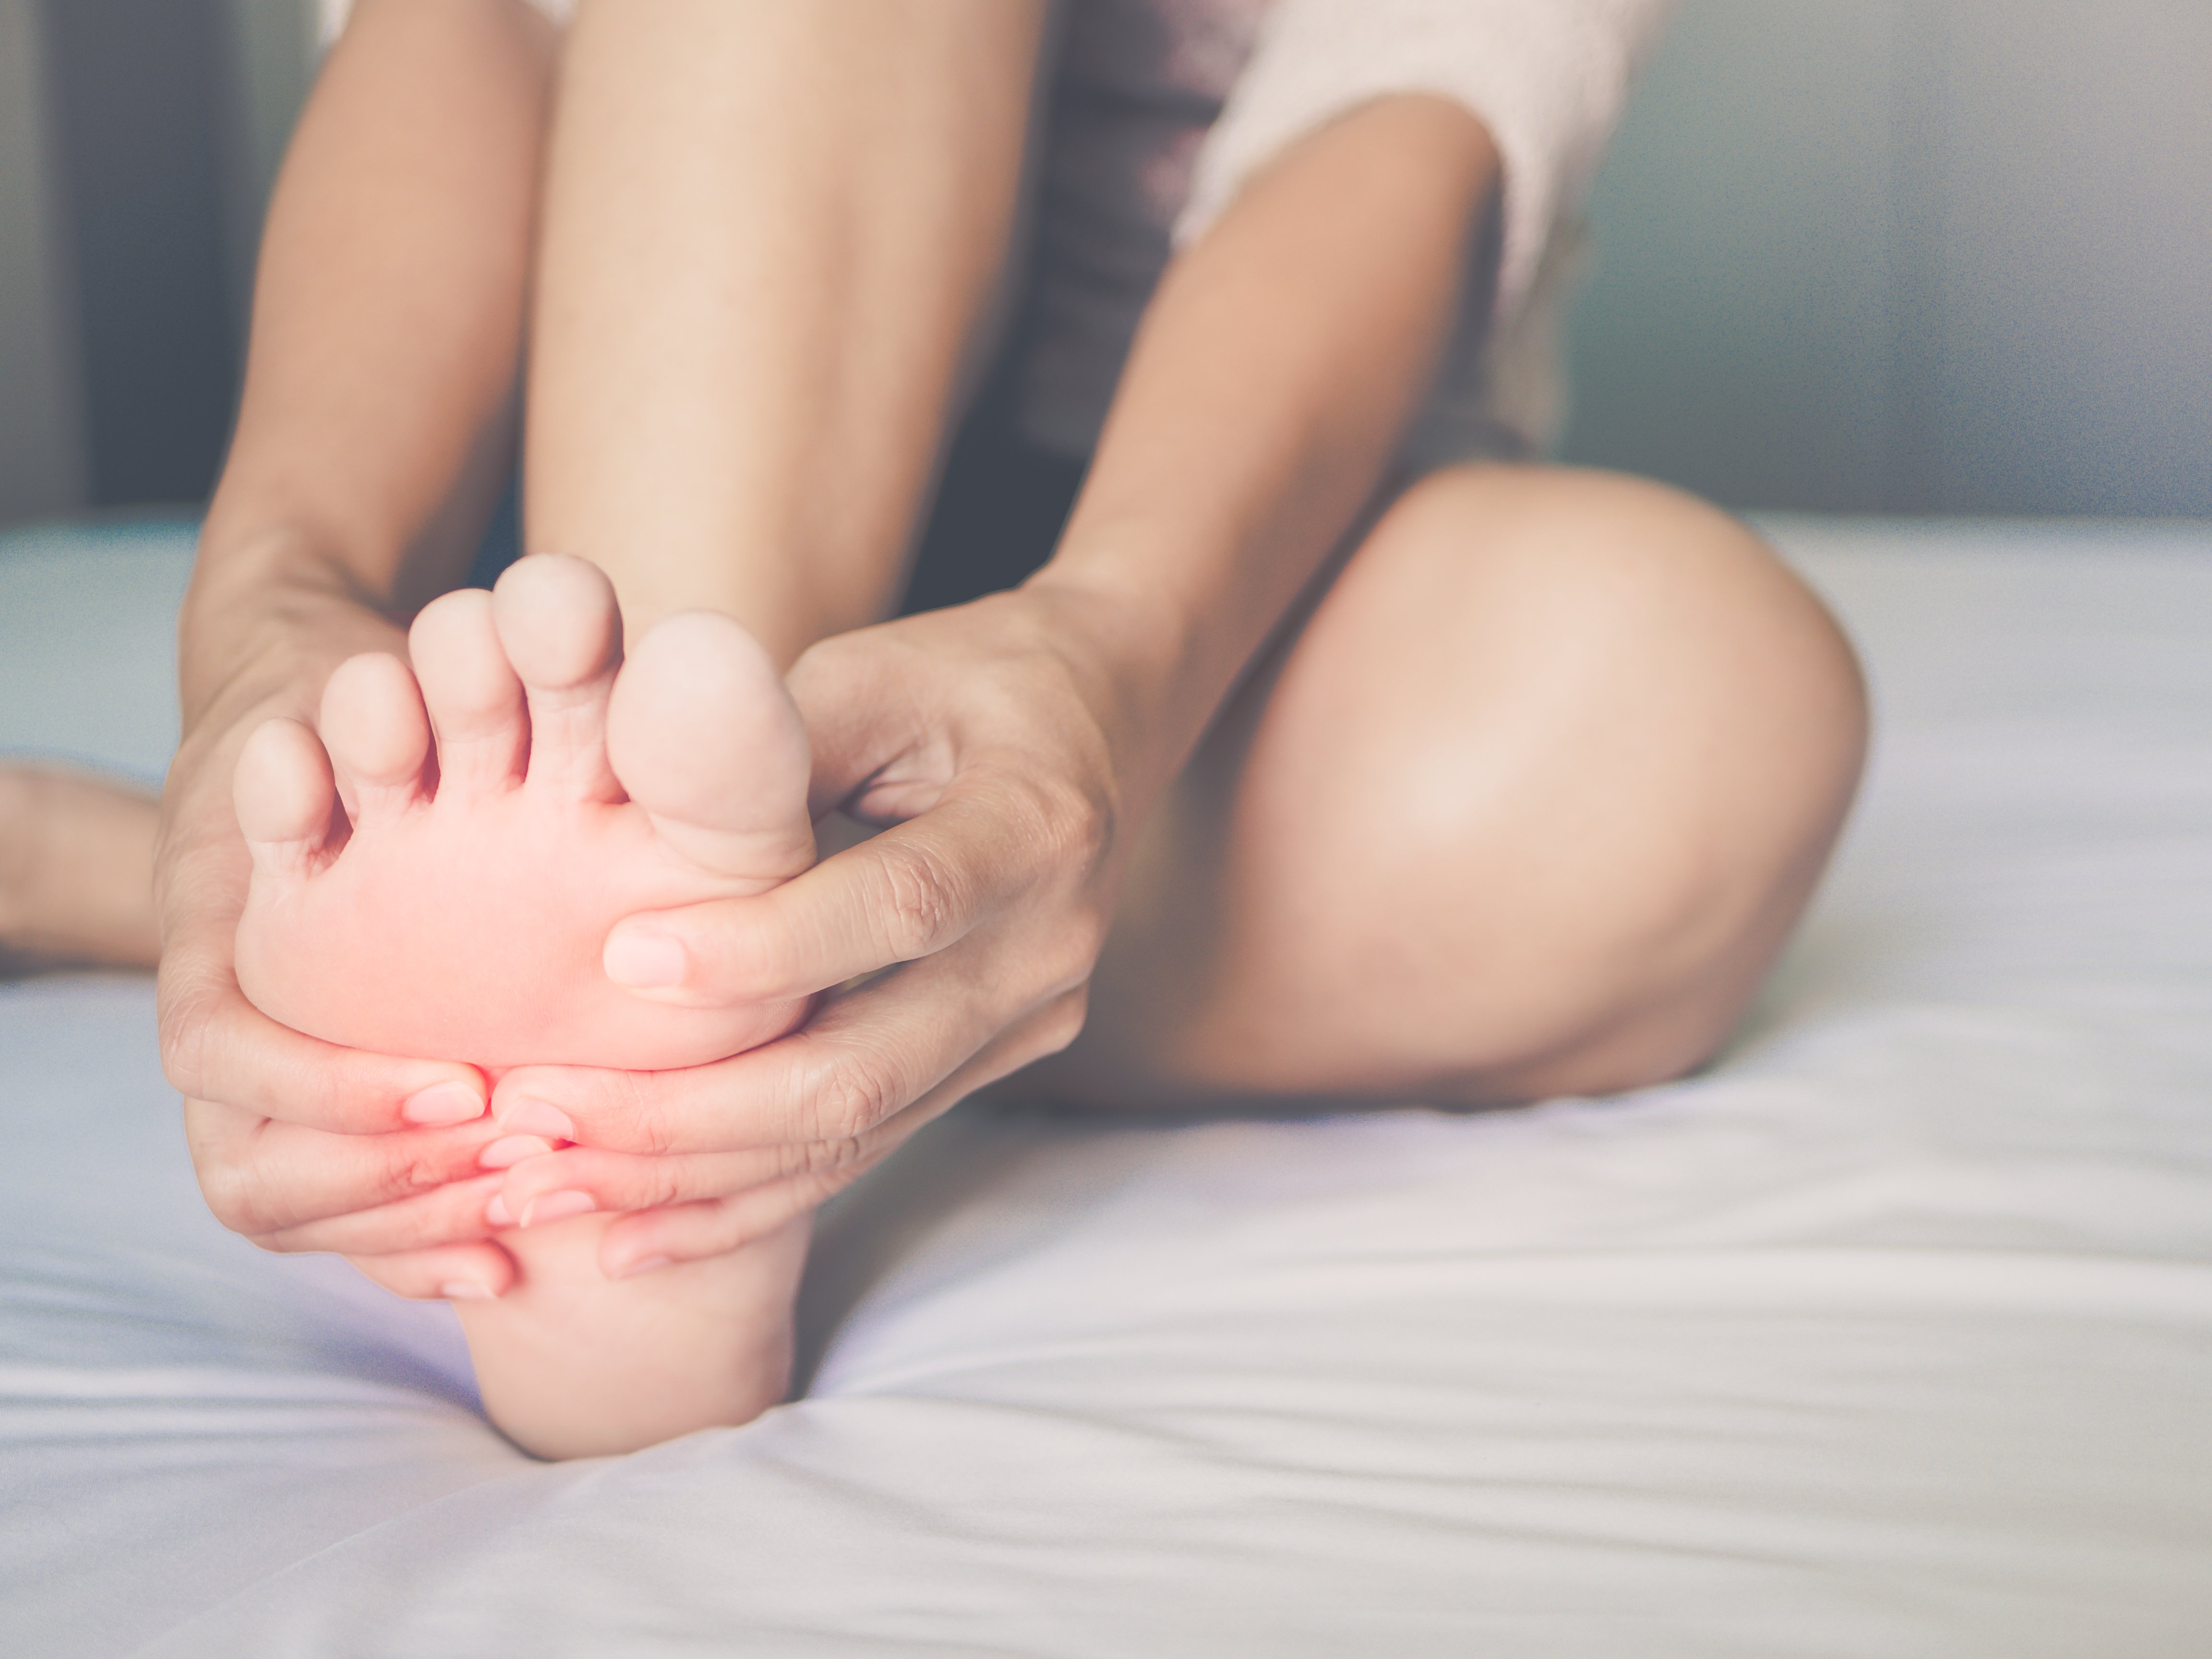 Frau reibt sich schmerzenden Fuß | Quelle: Shutterstock